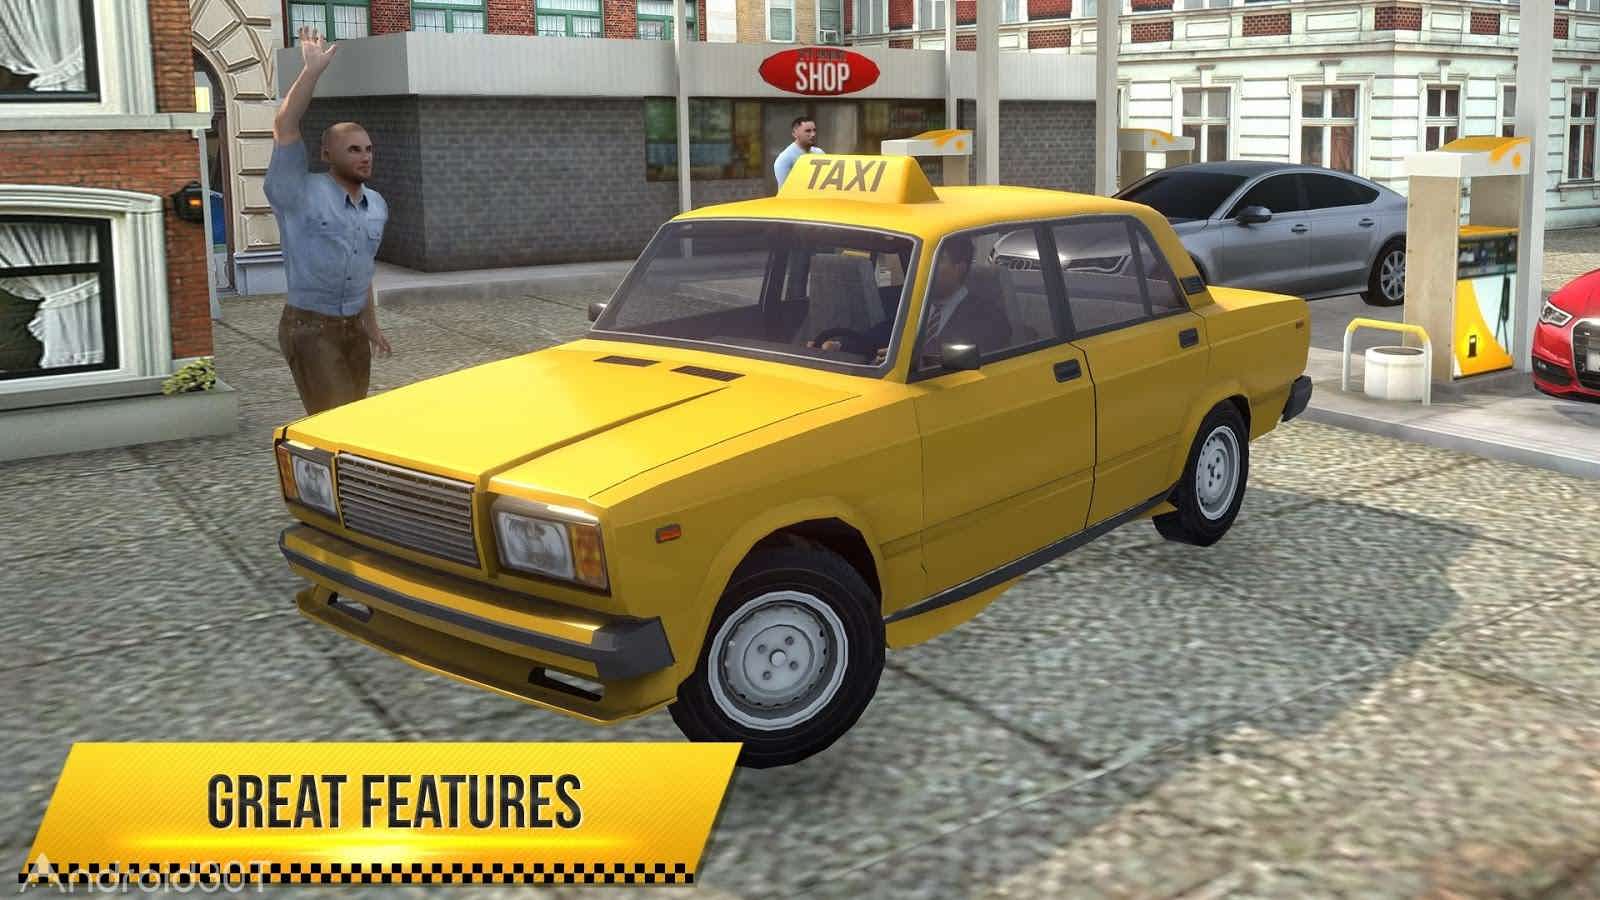 دانلود Taxi Simulator 2018 v1.0.0 – بازی شبیه ساز تاکسی 2018 اندروید